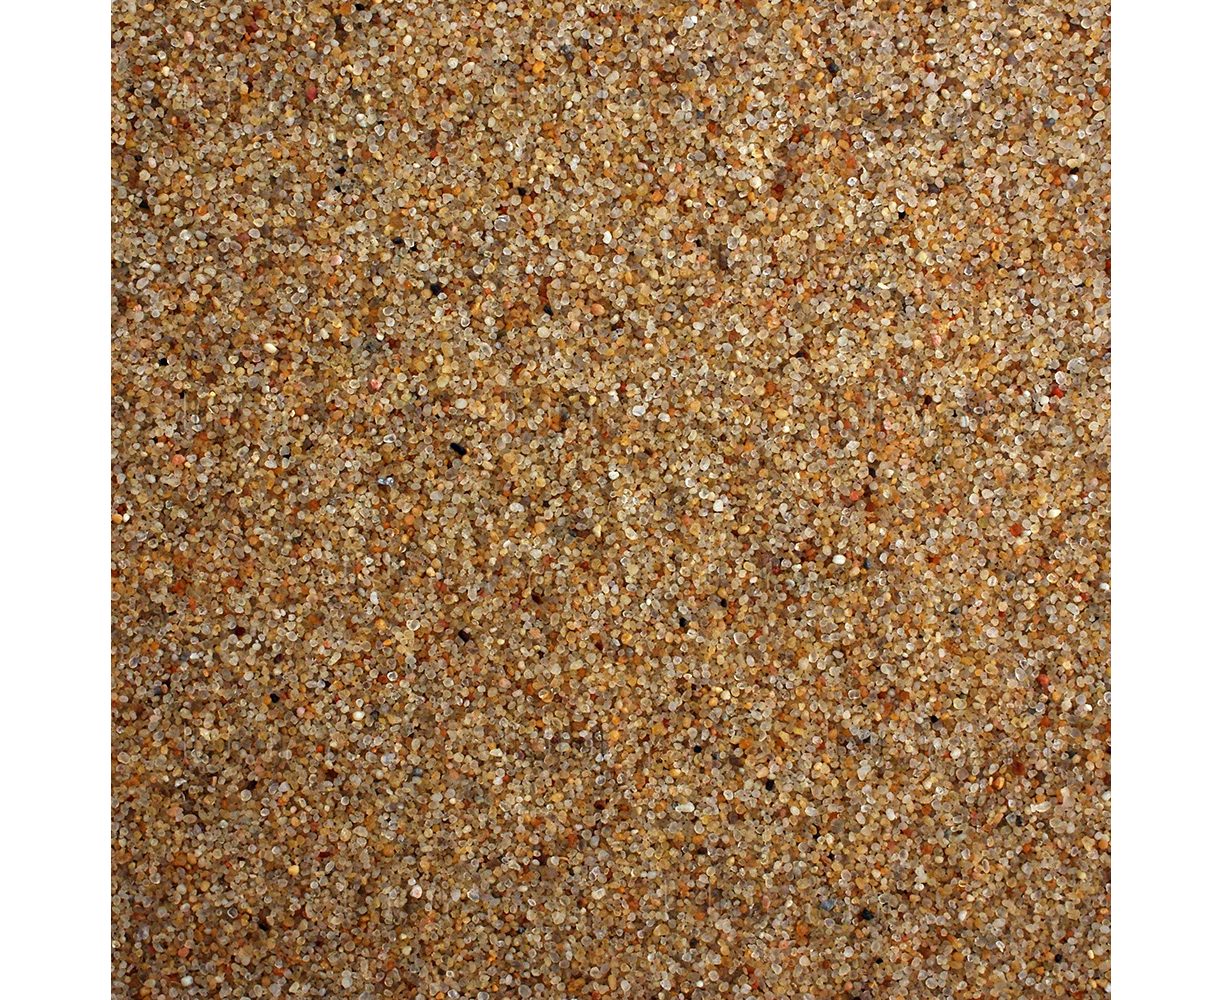 Мытый купить в нижнем новгороде. UDECO River Amber 0.8-2 мм. Крупный песок. Крупный Речной песок. Мелкий заполнитель для бетона песок.